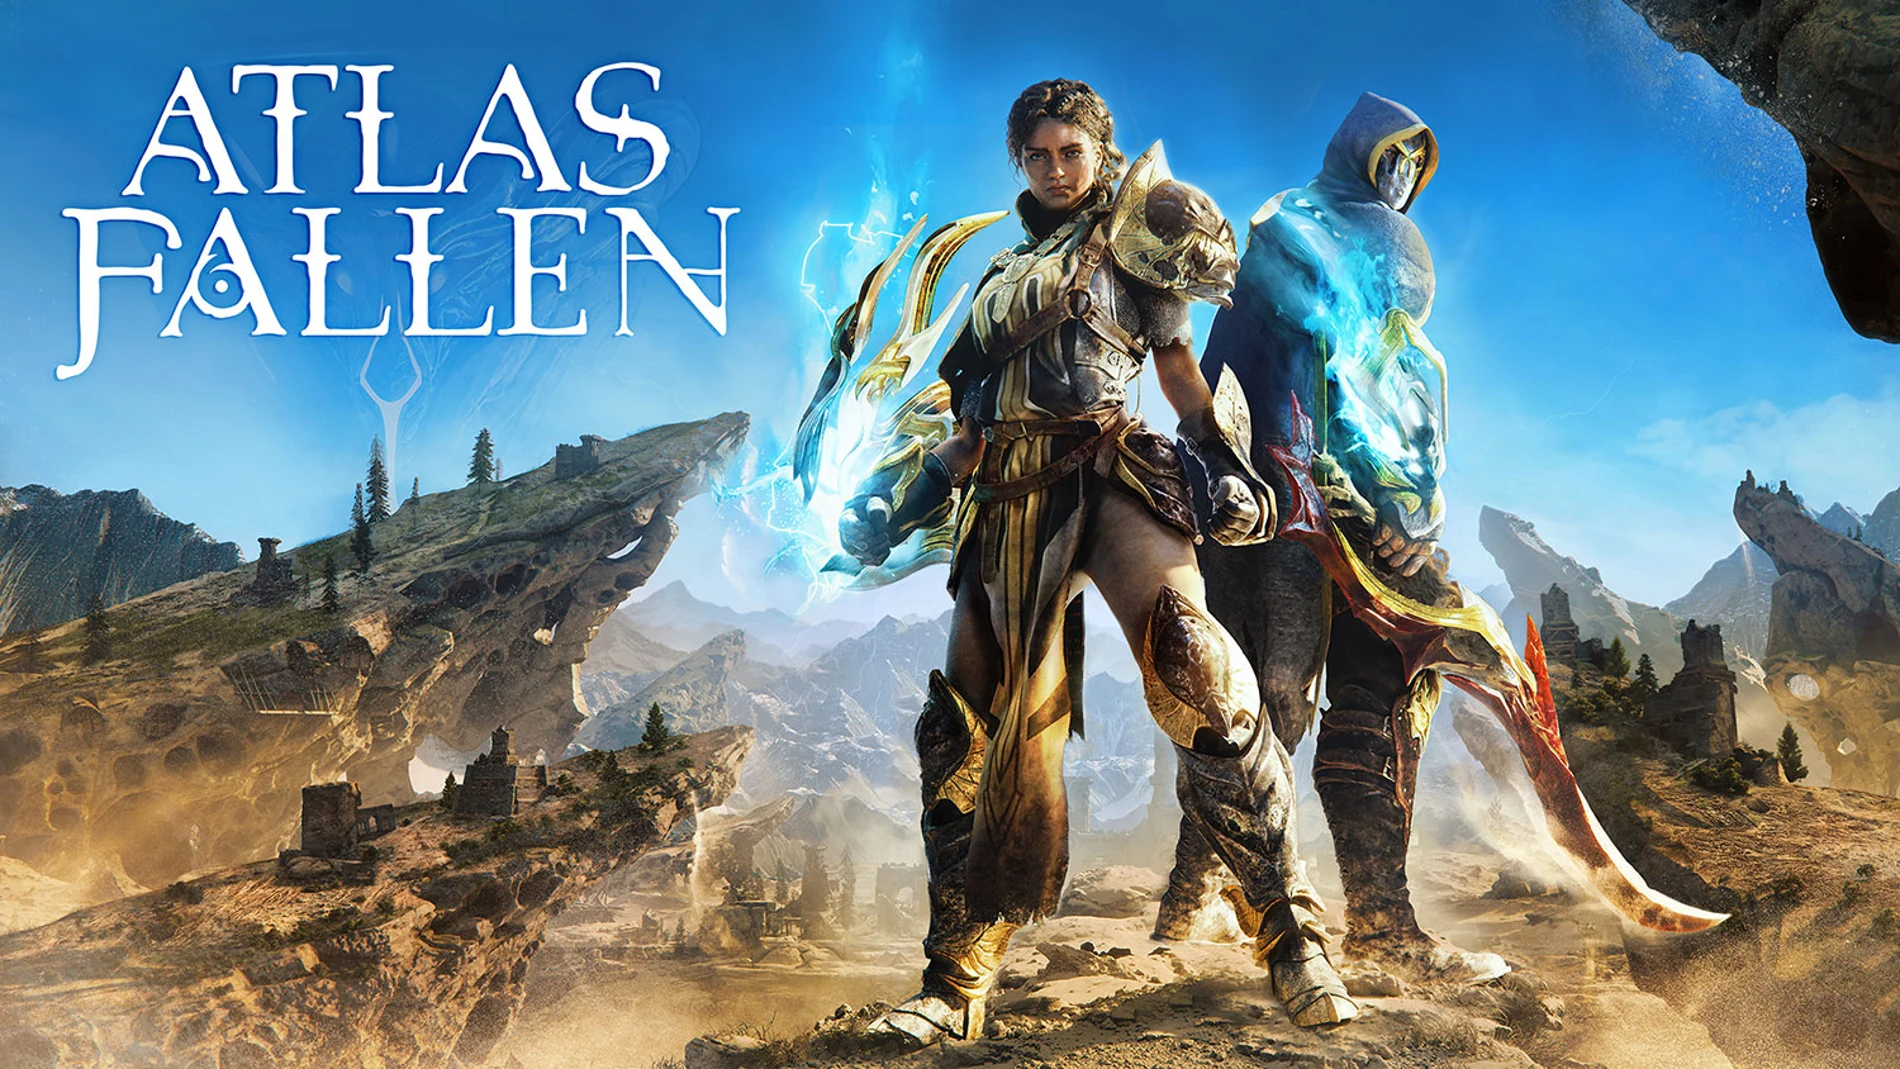 Atlas Fallen ofrece una visión más detallada de su fórmula de juego en una secuencia inédita.